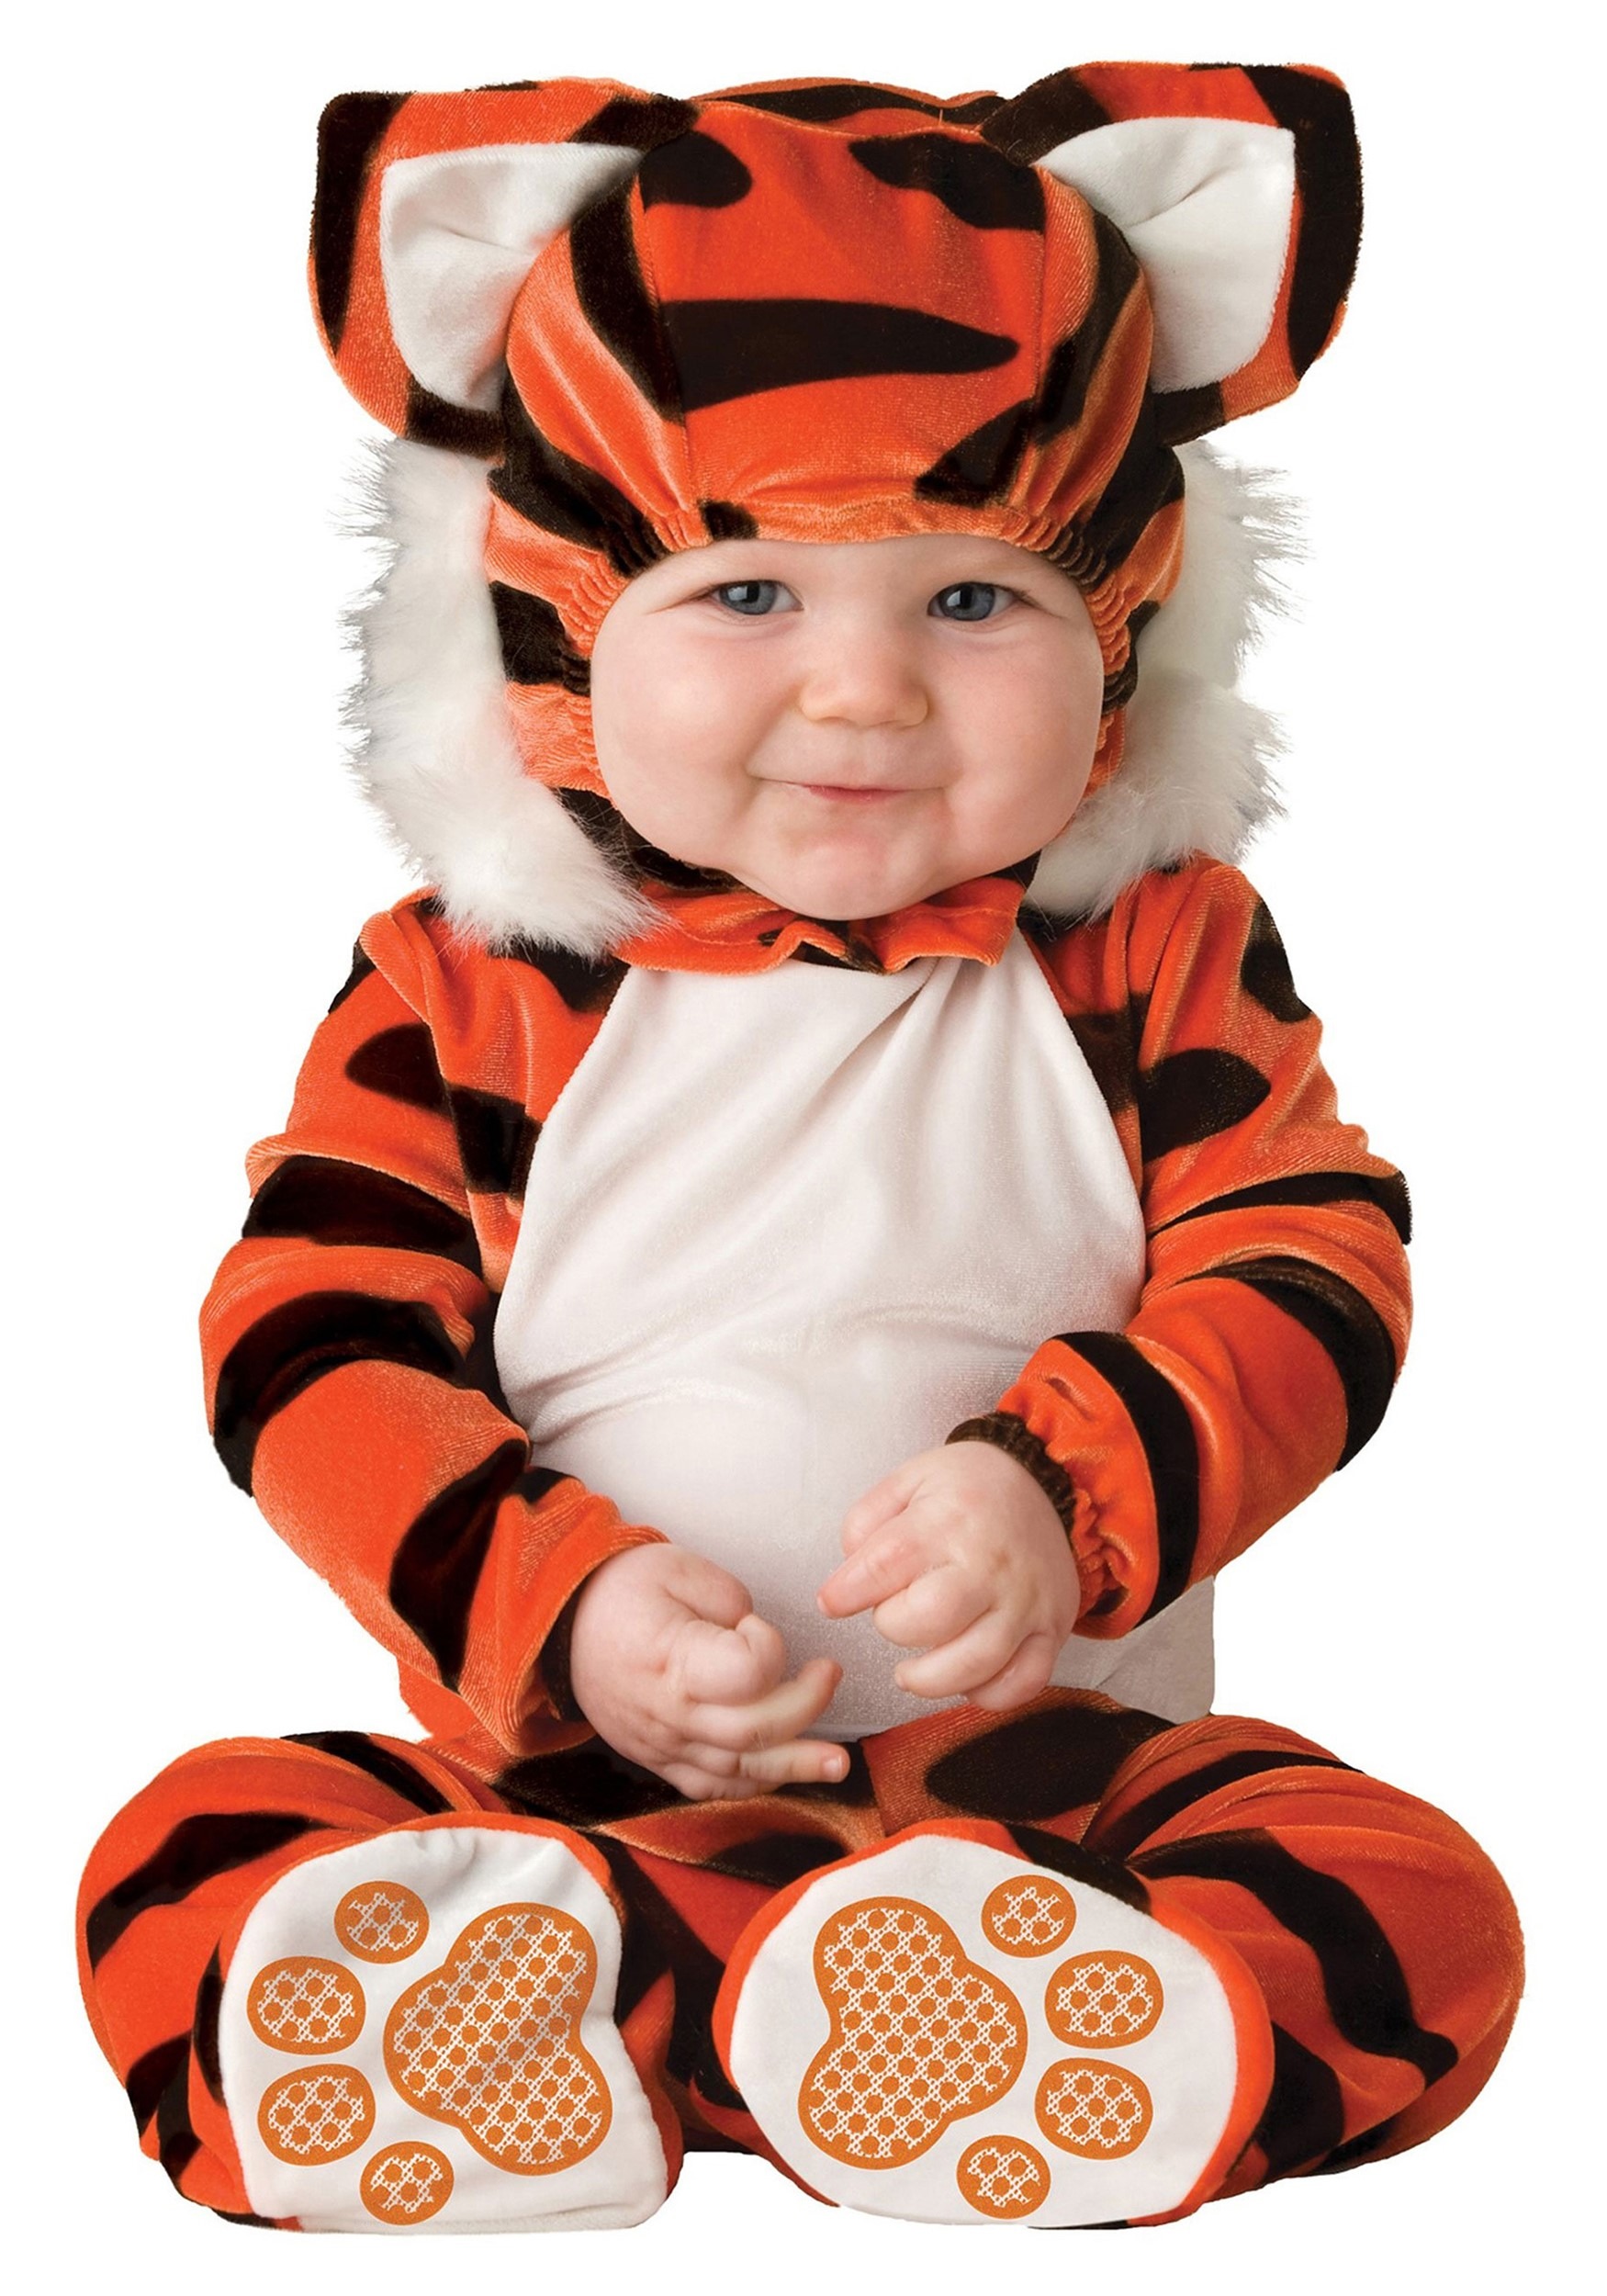 Tiger Costume For Infants